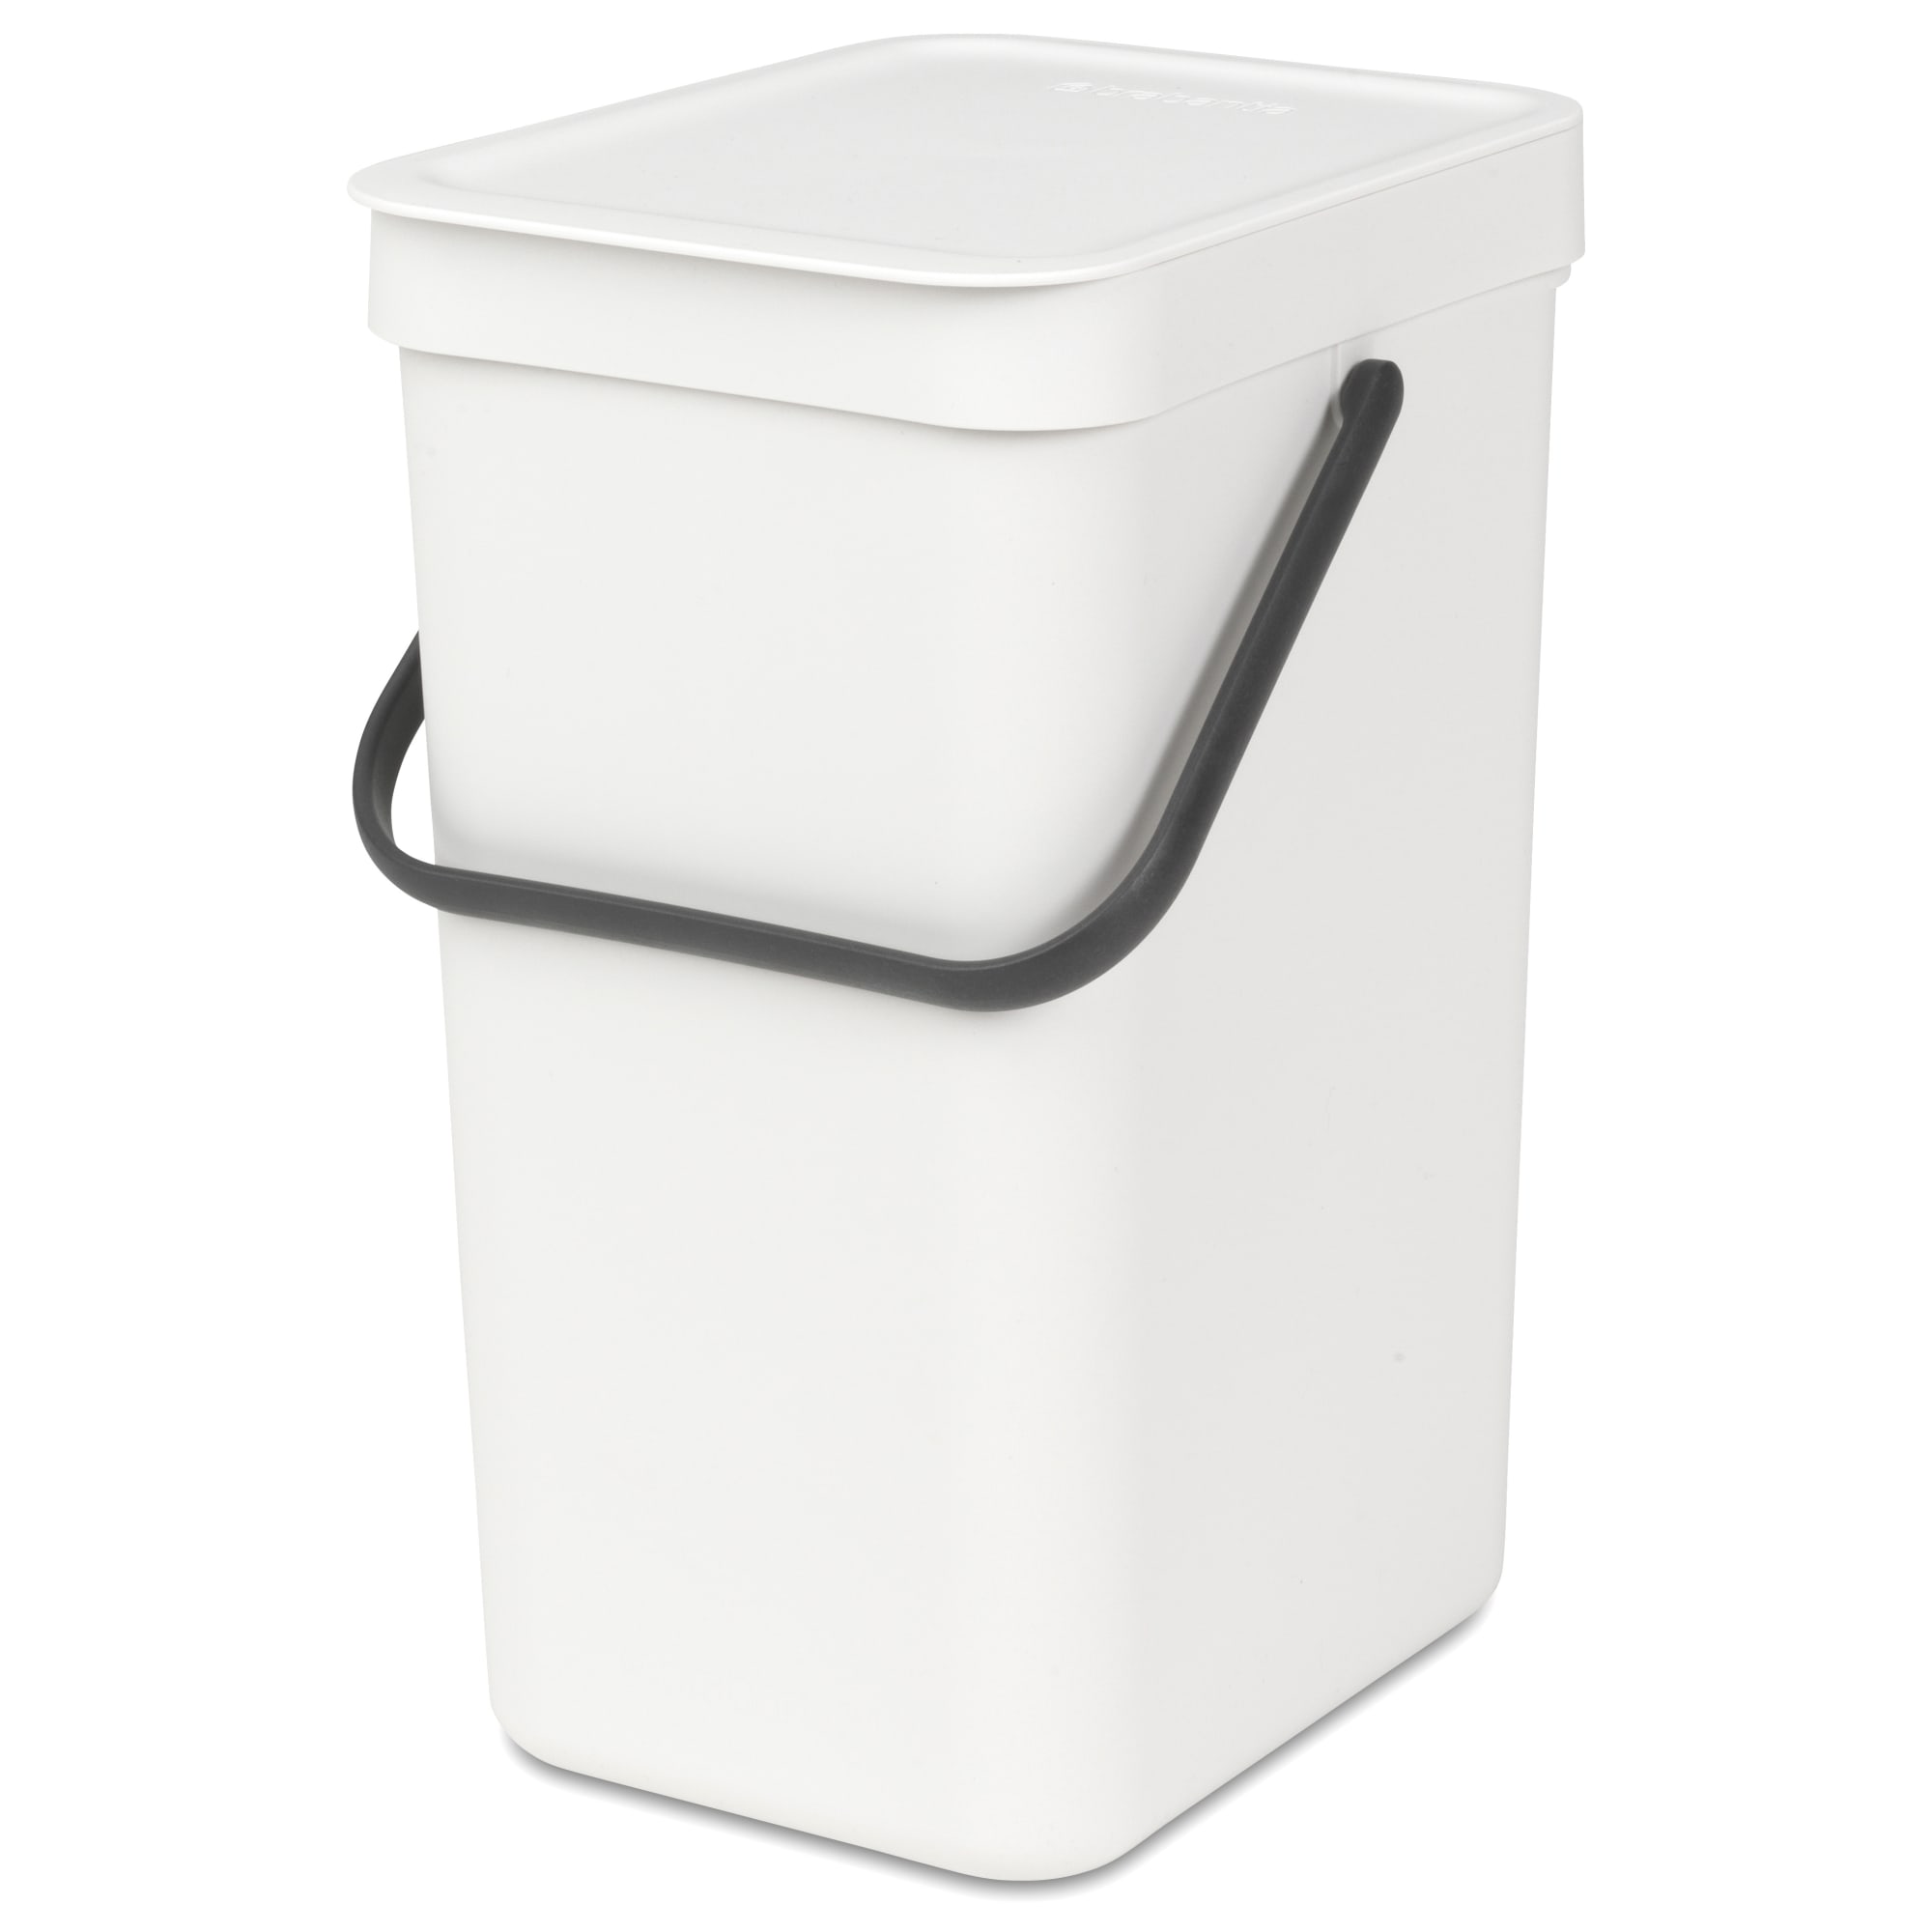 12 liter - Smart affaldssortering til hjemmet